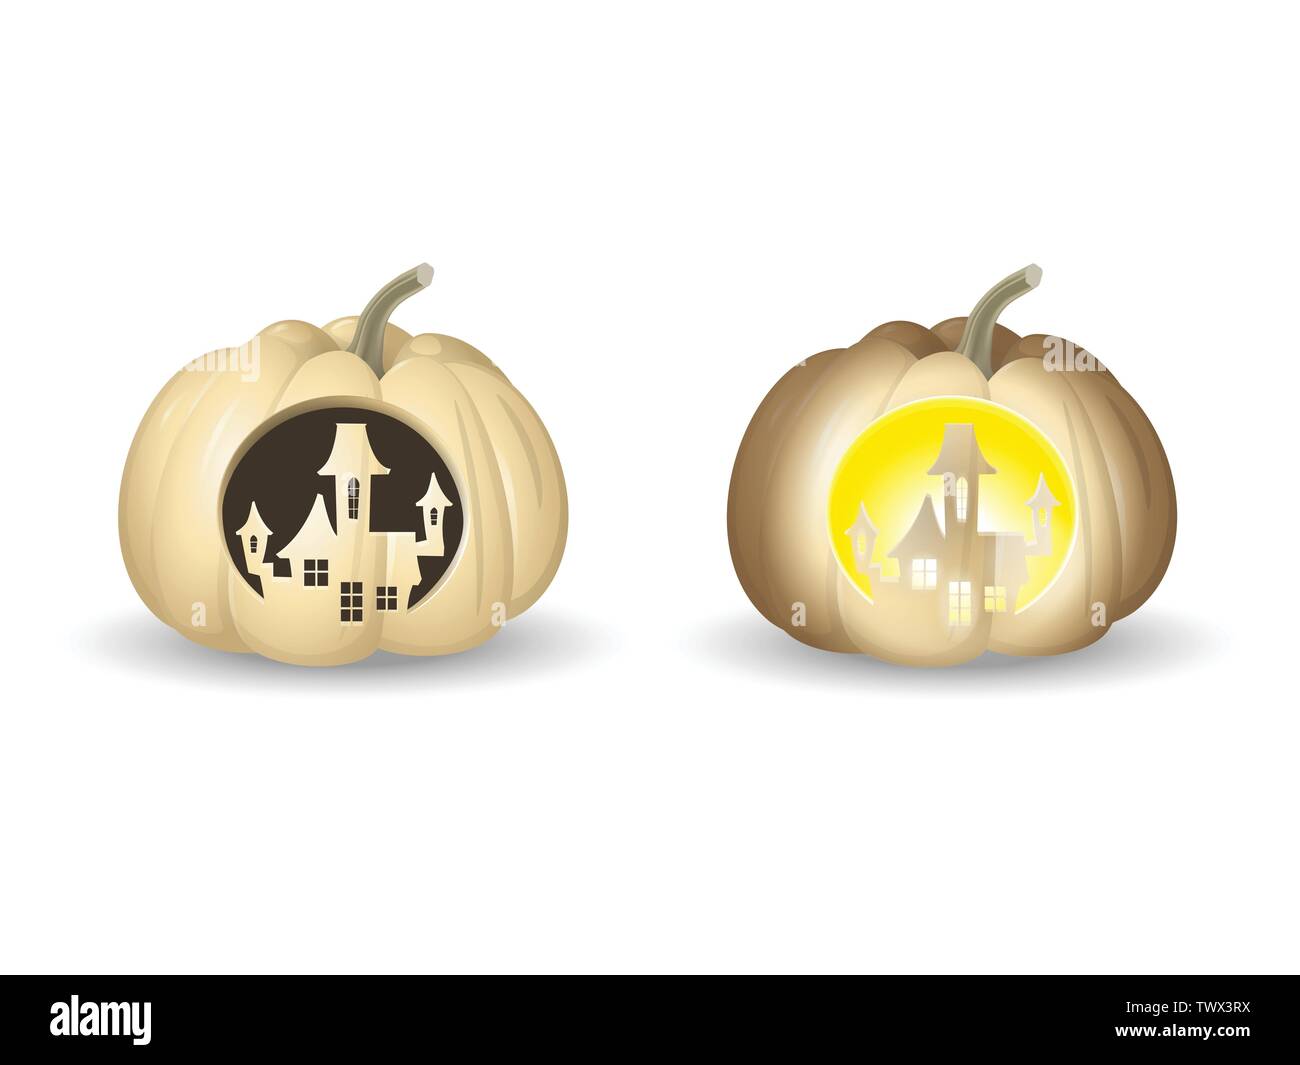 Bianco di Halloween zucche Jack o lantern - castello forma scolpita con e senza luci - illustrazione di vettore isolato su sfondo bianco Illustrazione Vettoriale